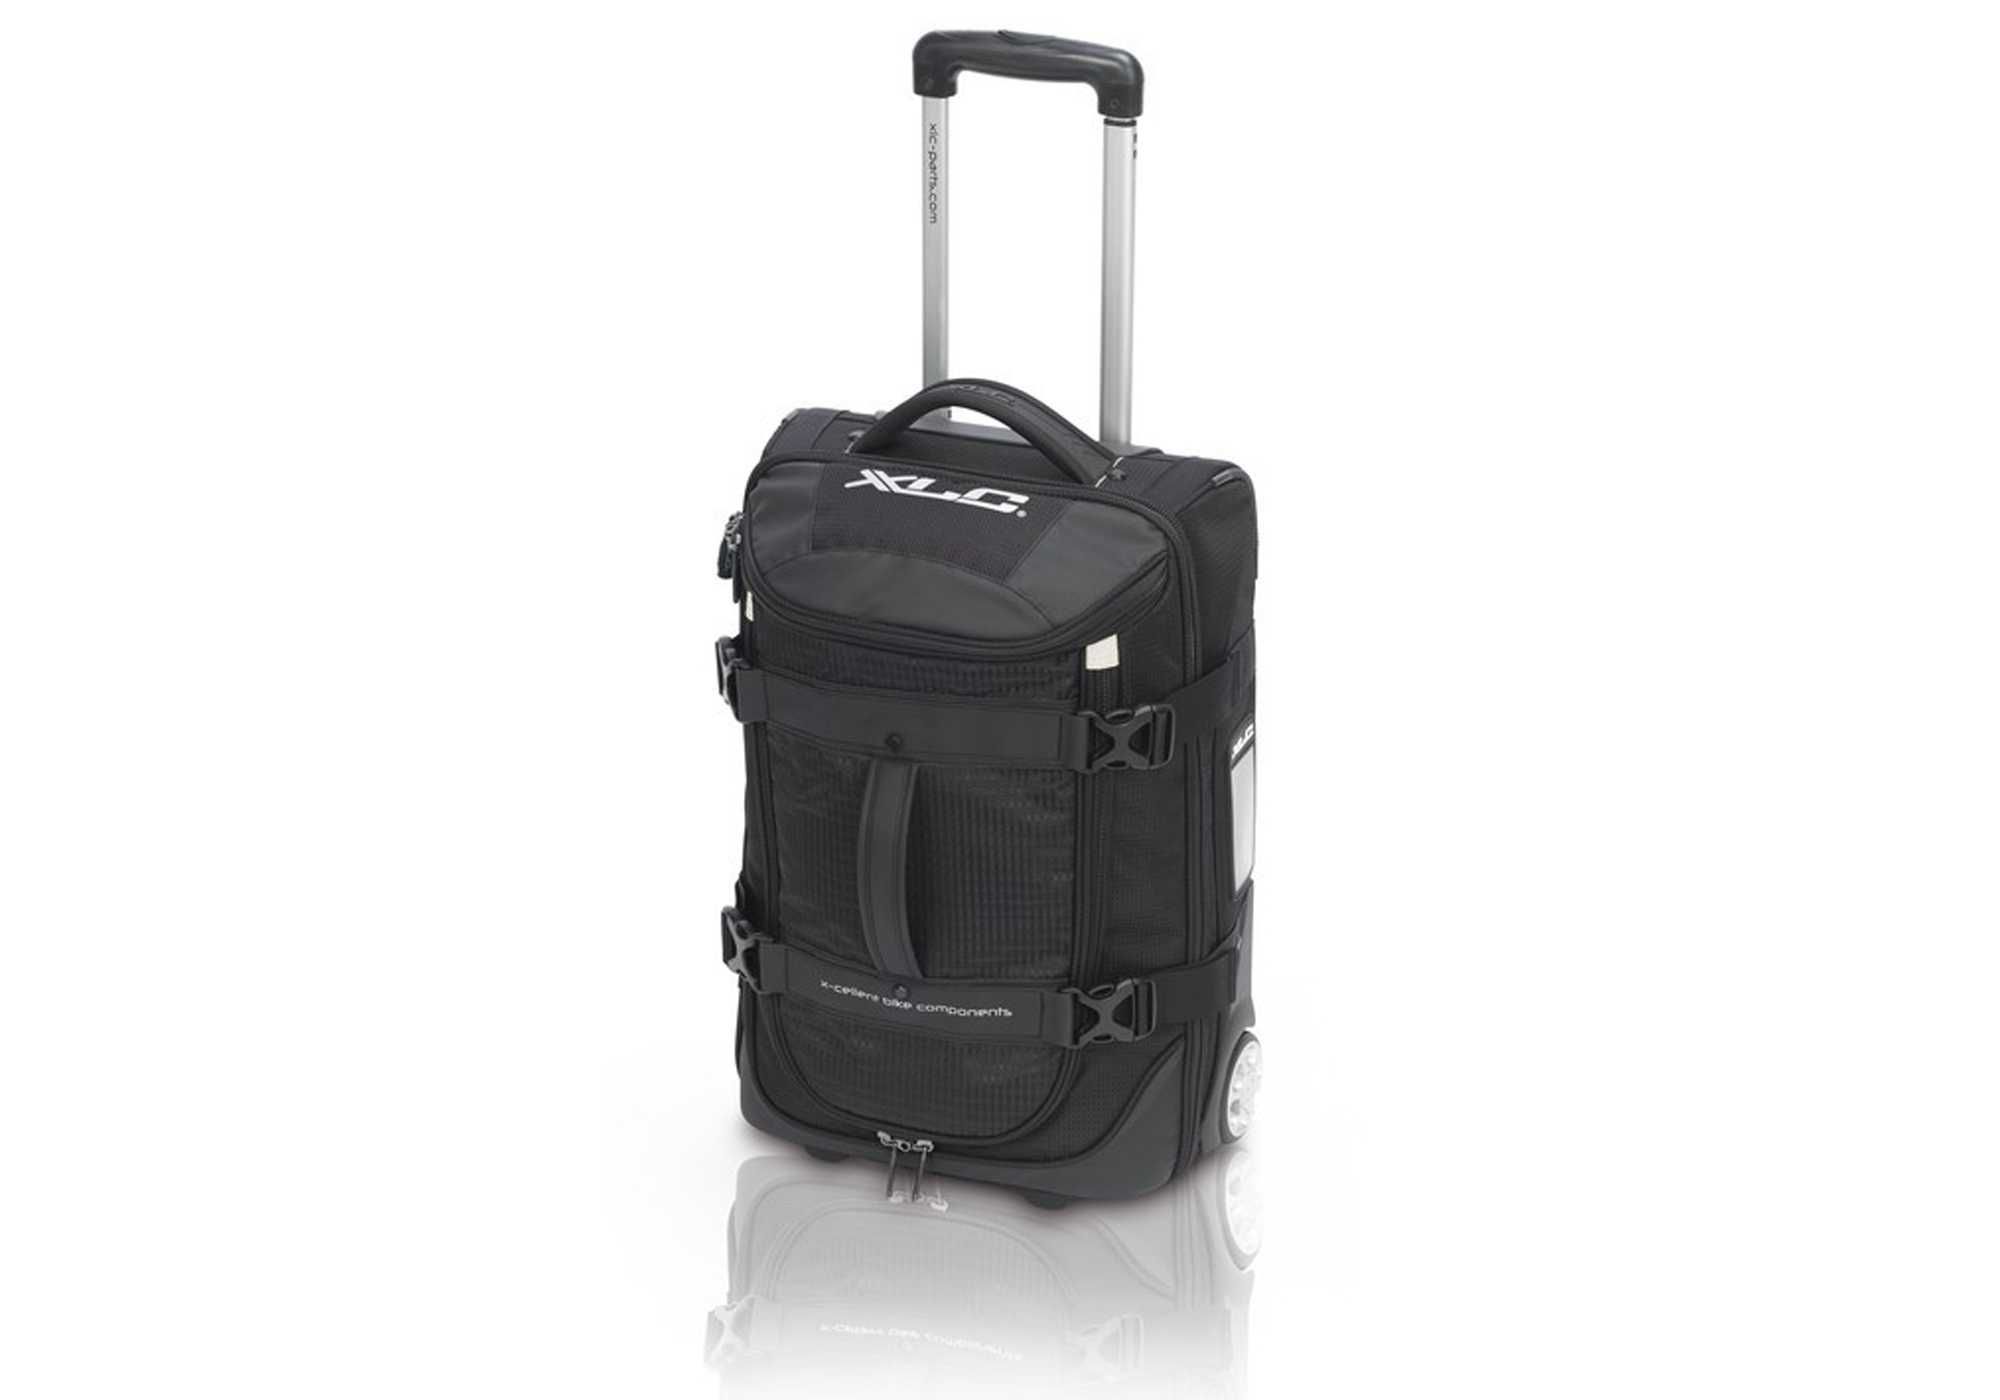 Torba podróżna na kółkach XLC TROLLEY walizka BA-W28 BUSINESS 55x35cm